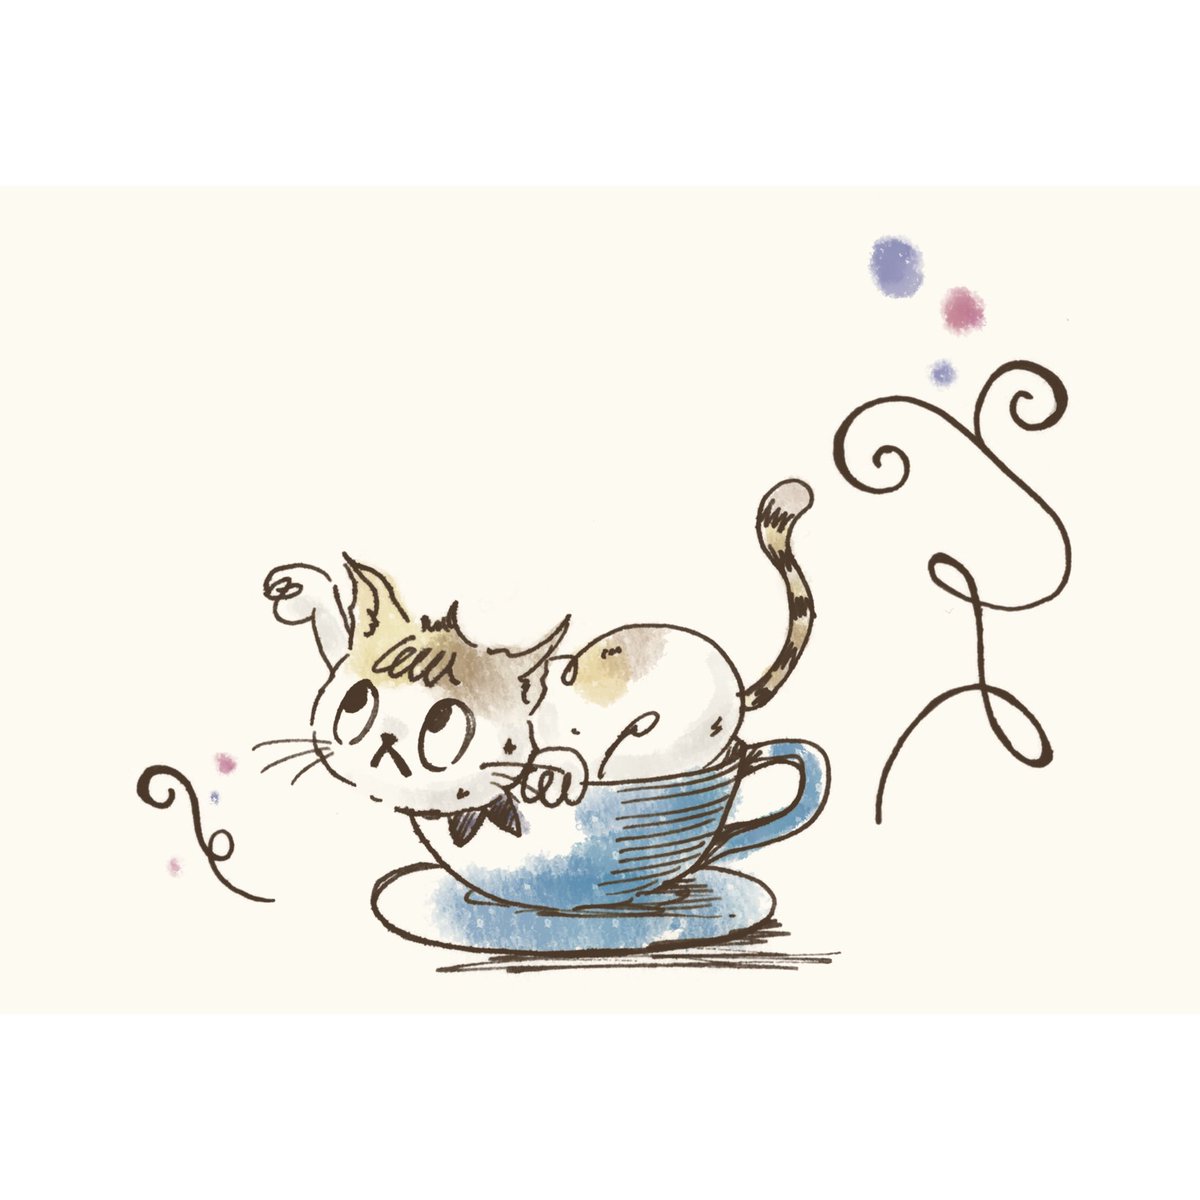 喫茶noizm デザフェスb74 On Twitter 猫と喫茶店イラスト7 カフェノートと作る為に描いてみました 万年筆によって滲みが違いますね タッチも少し変わっちゃってます ねこ 猫 Cat イラスト Illustration Postcard ポストカード 万年筆 手描き